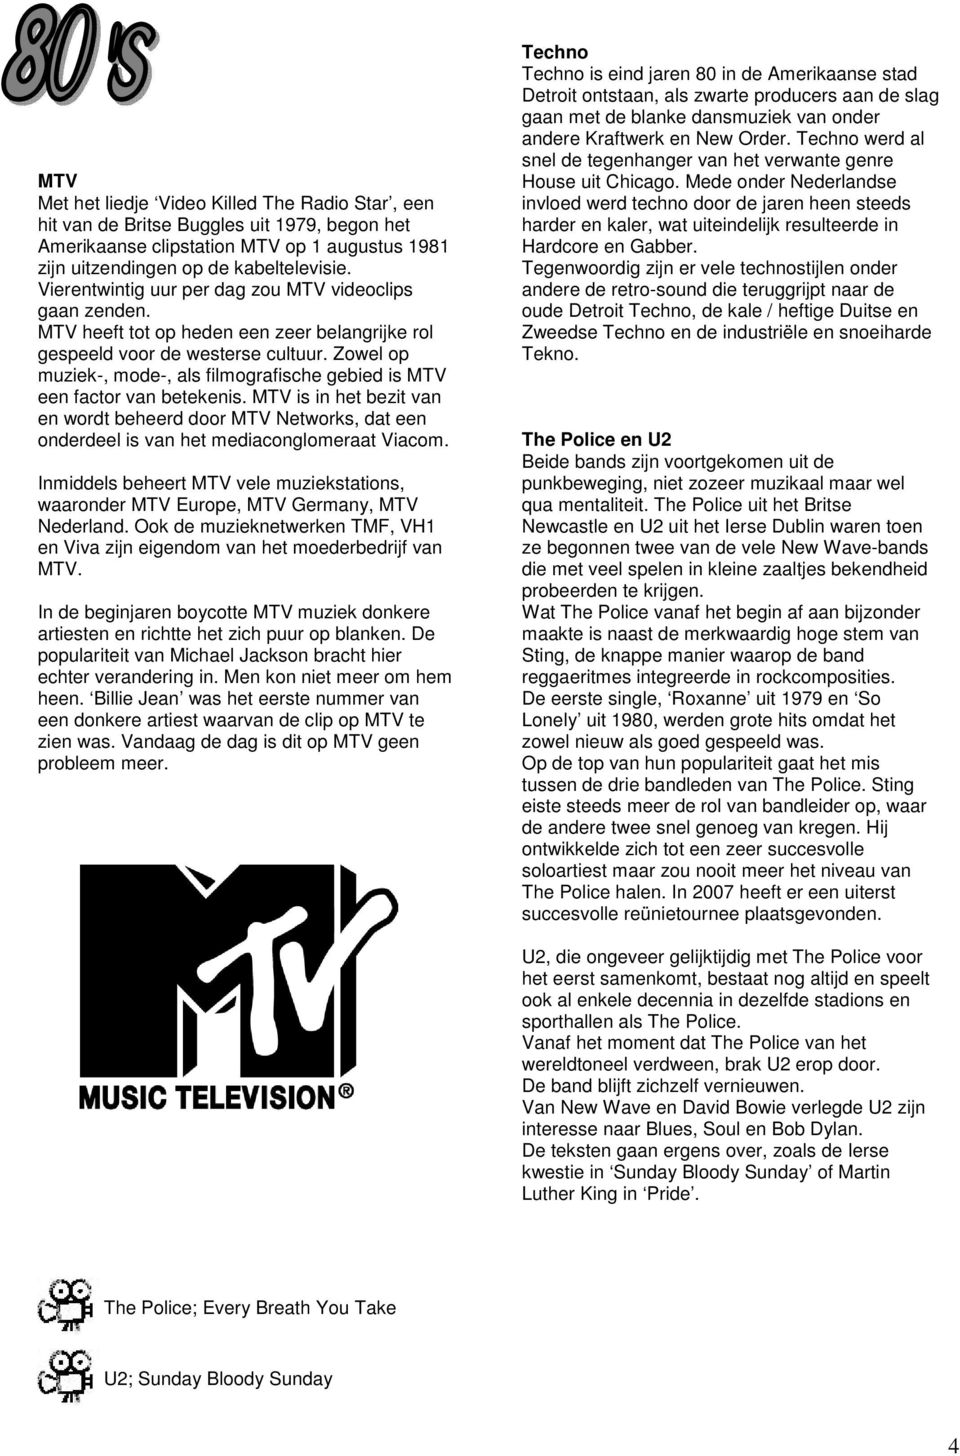 Zowel op muziek-, mode-, als filmografische gebied is MTV een factor van betekenis. MTV is in het bezit van en wordt beheerd door MTV Networks, dat een onderdeel is van het mediaconglomeraat Viacom.